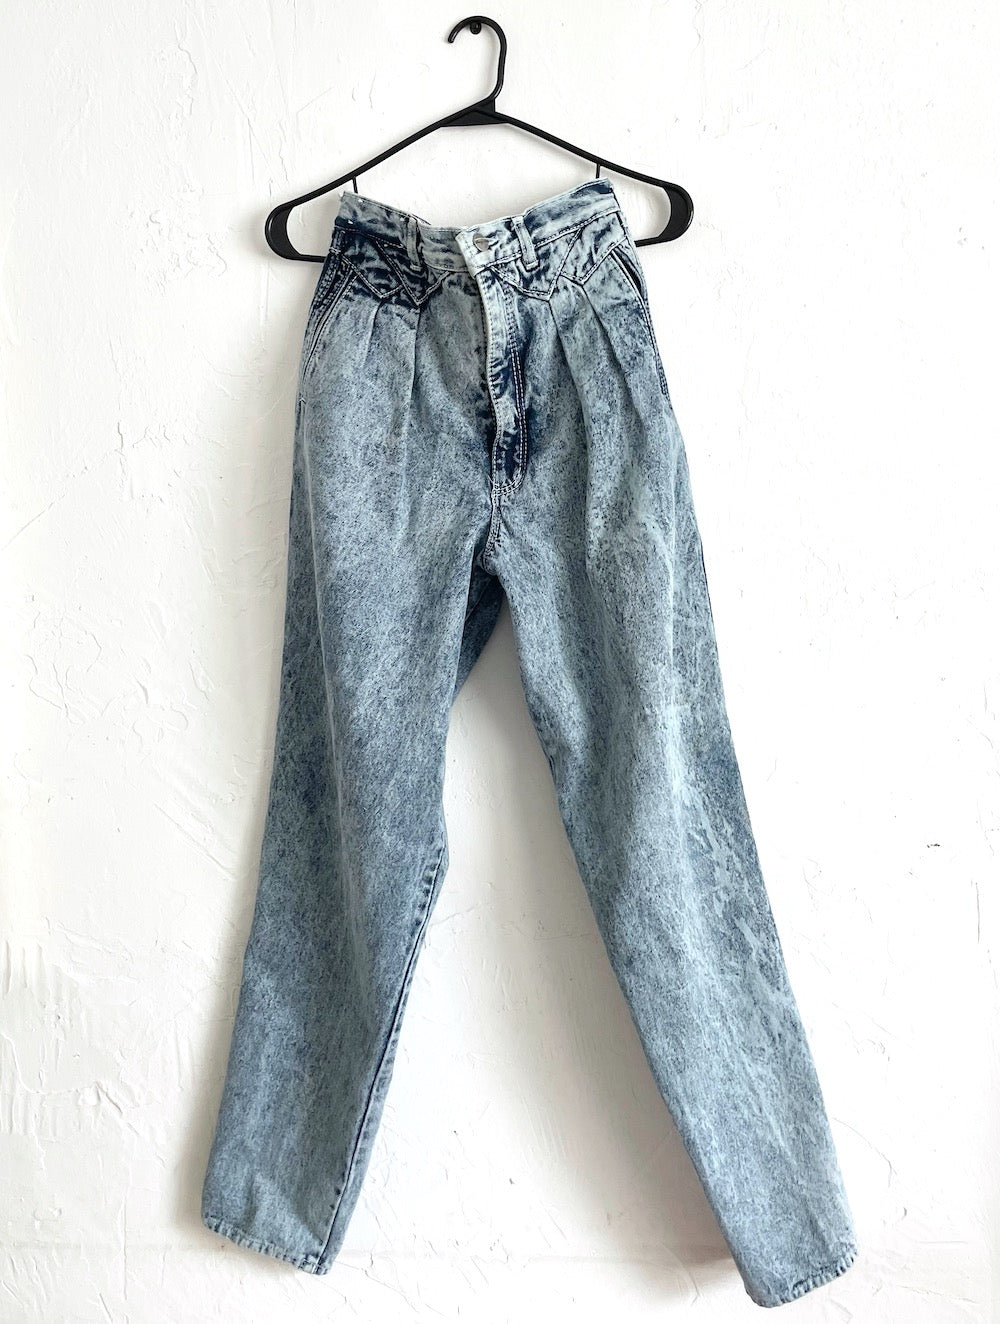 Vintage 90s Acid Wash High Waist Mom Jeans -- Size 26